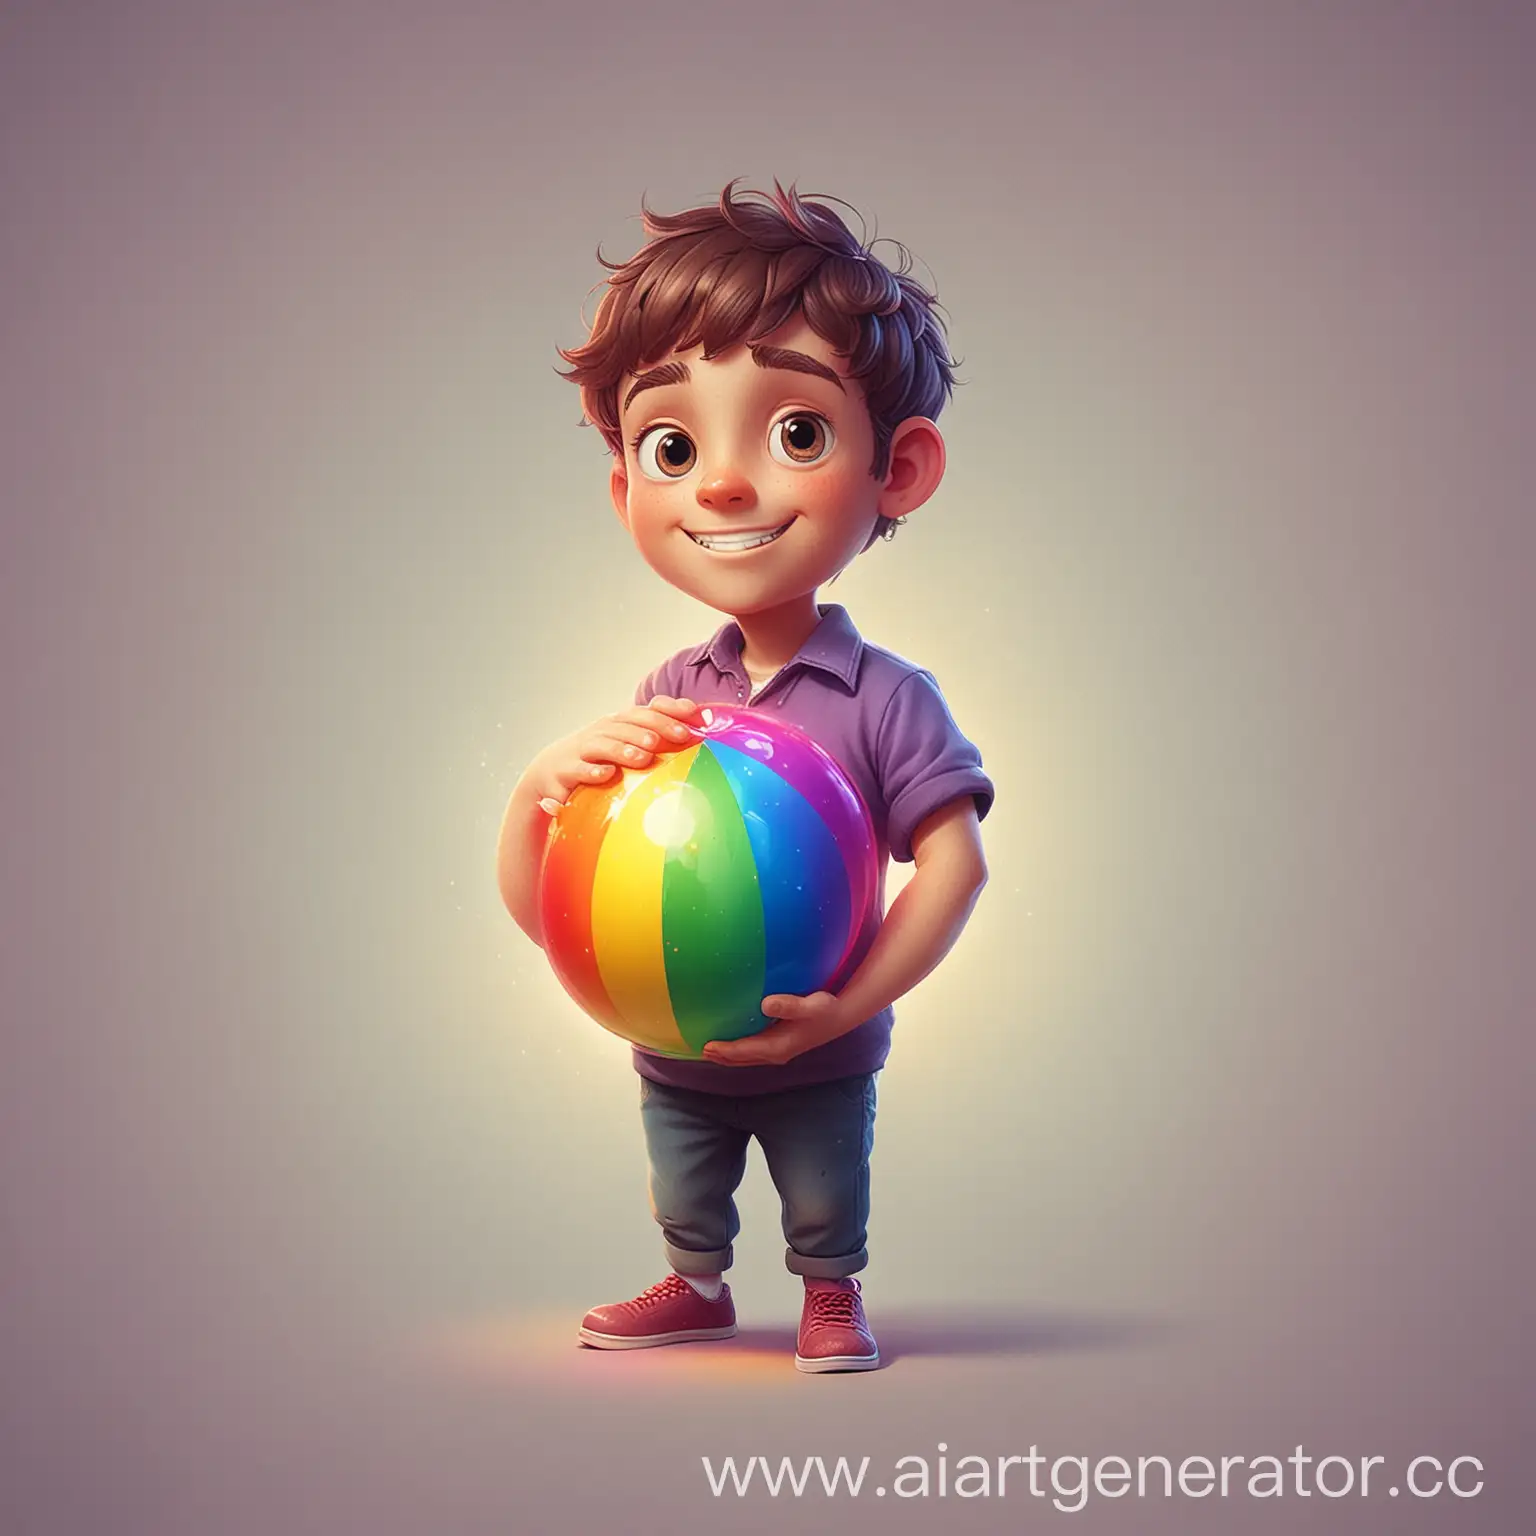 Иллюстрация: Персонаж, который удерживает ярко разноцветный шарик, символизирующий доброту